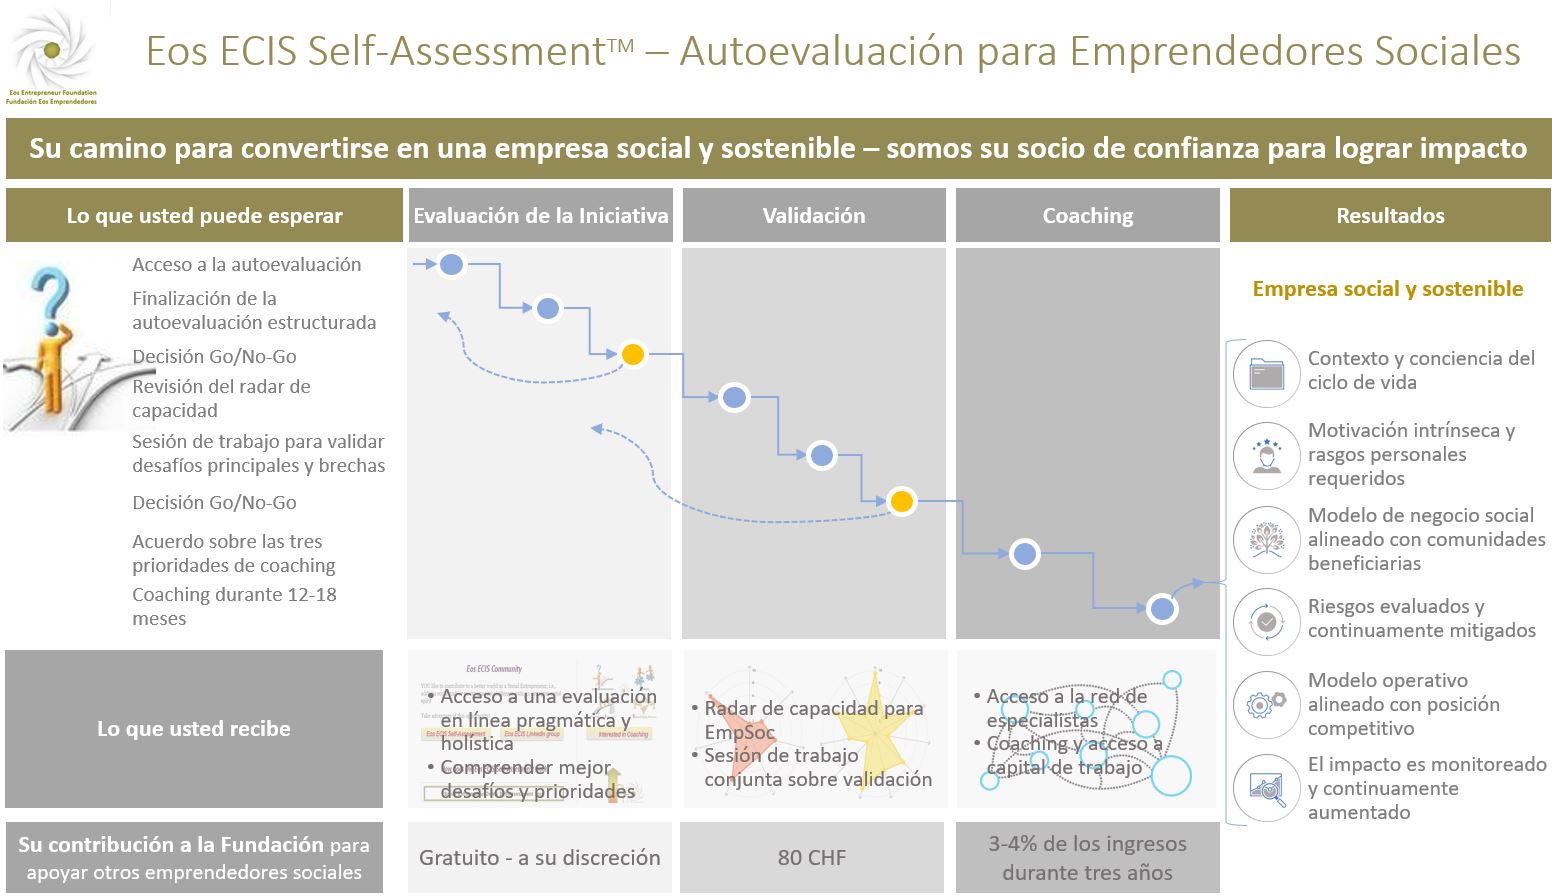 Eos ECIS Self-Assessment - Autoevaluación para Emprendedores Sociales